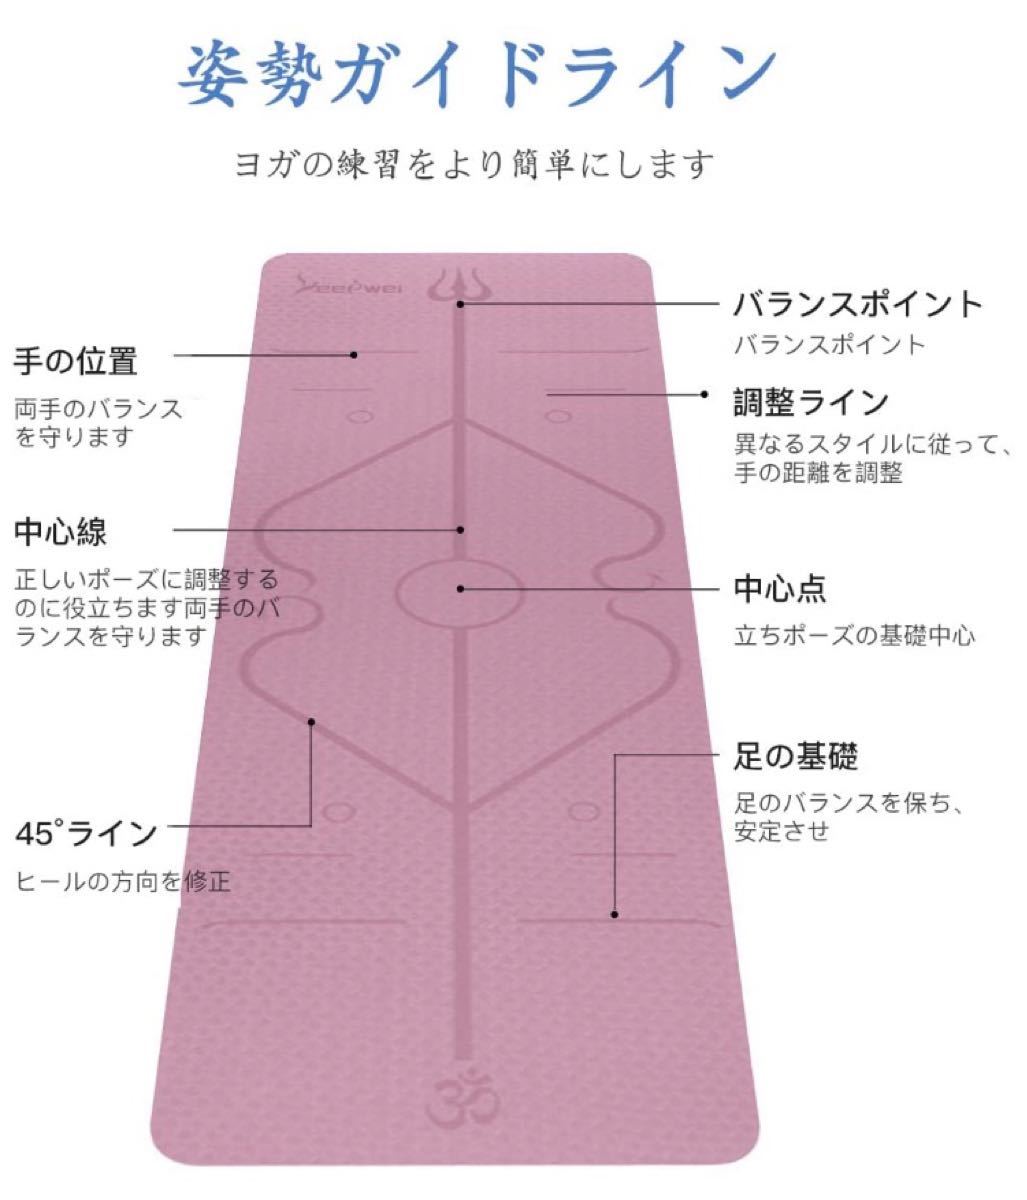 【2020最新版 ガイドライン付き】ヨガマット 6mm エクササイズマット